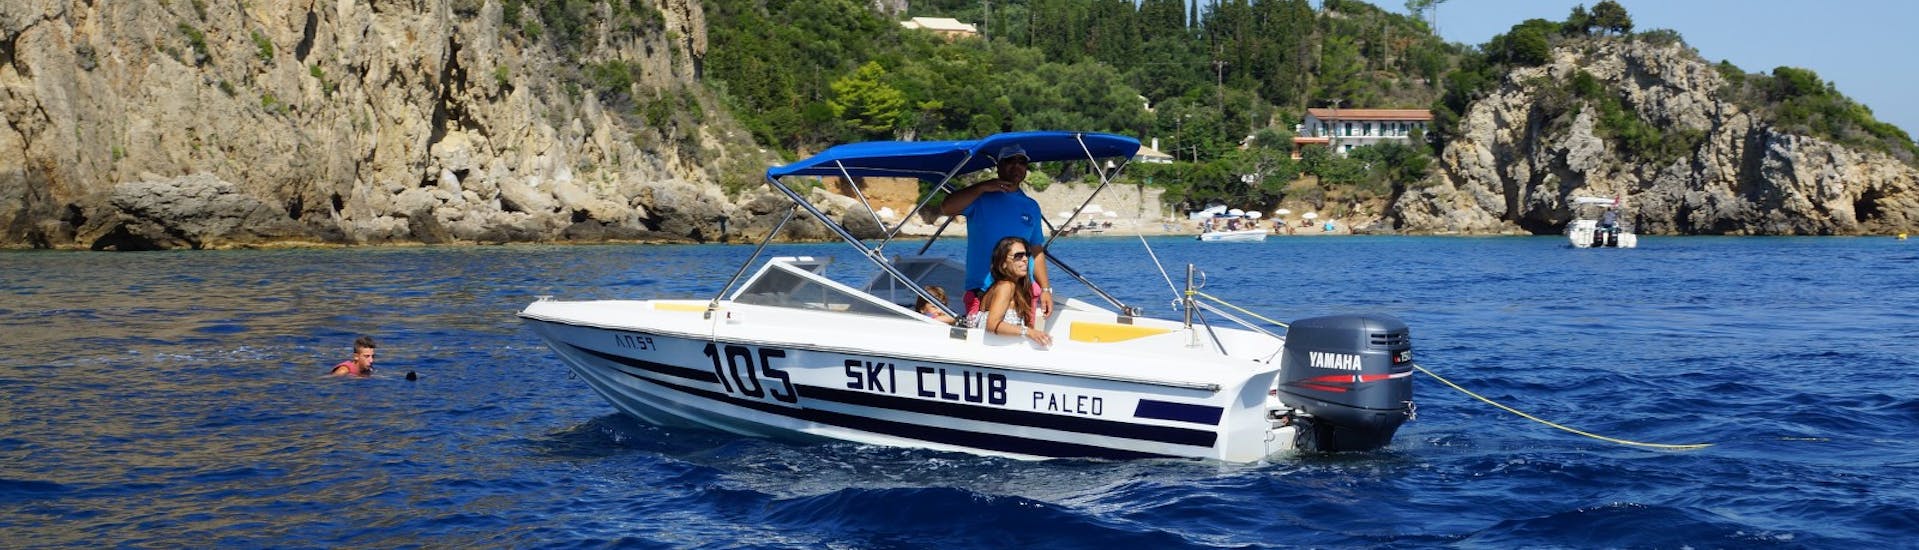 Ein Boot im Meer und ein Wakeboarder im Wasser beim Wakeboarden am Strand St. Petros in Korfu mit Ski Club 105 Corfu.